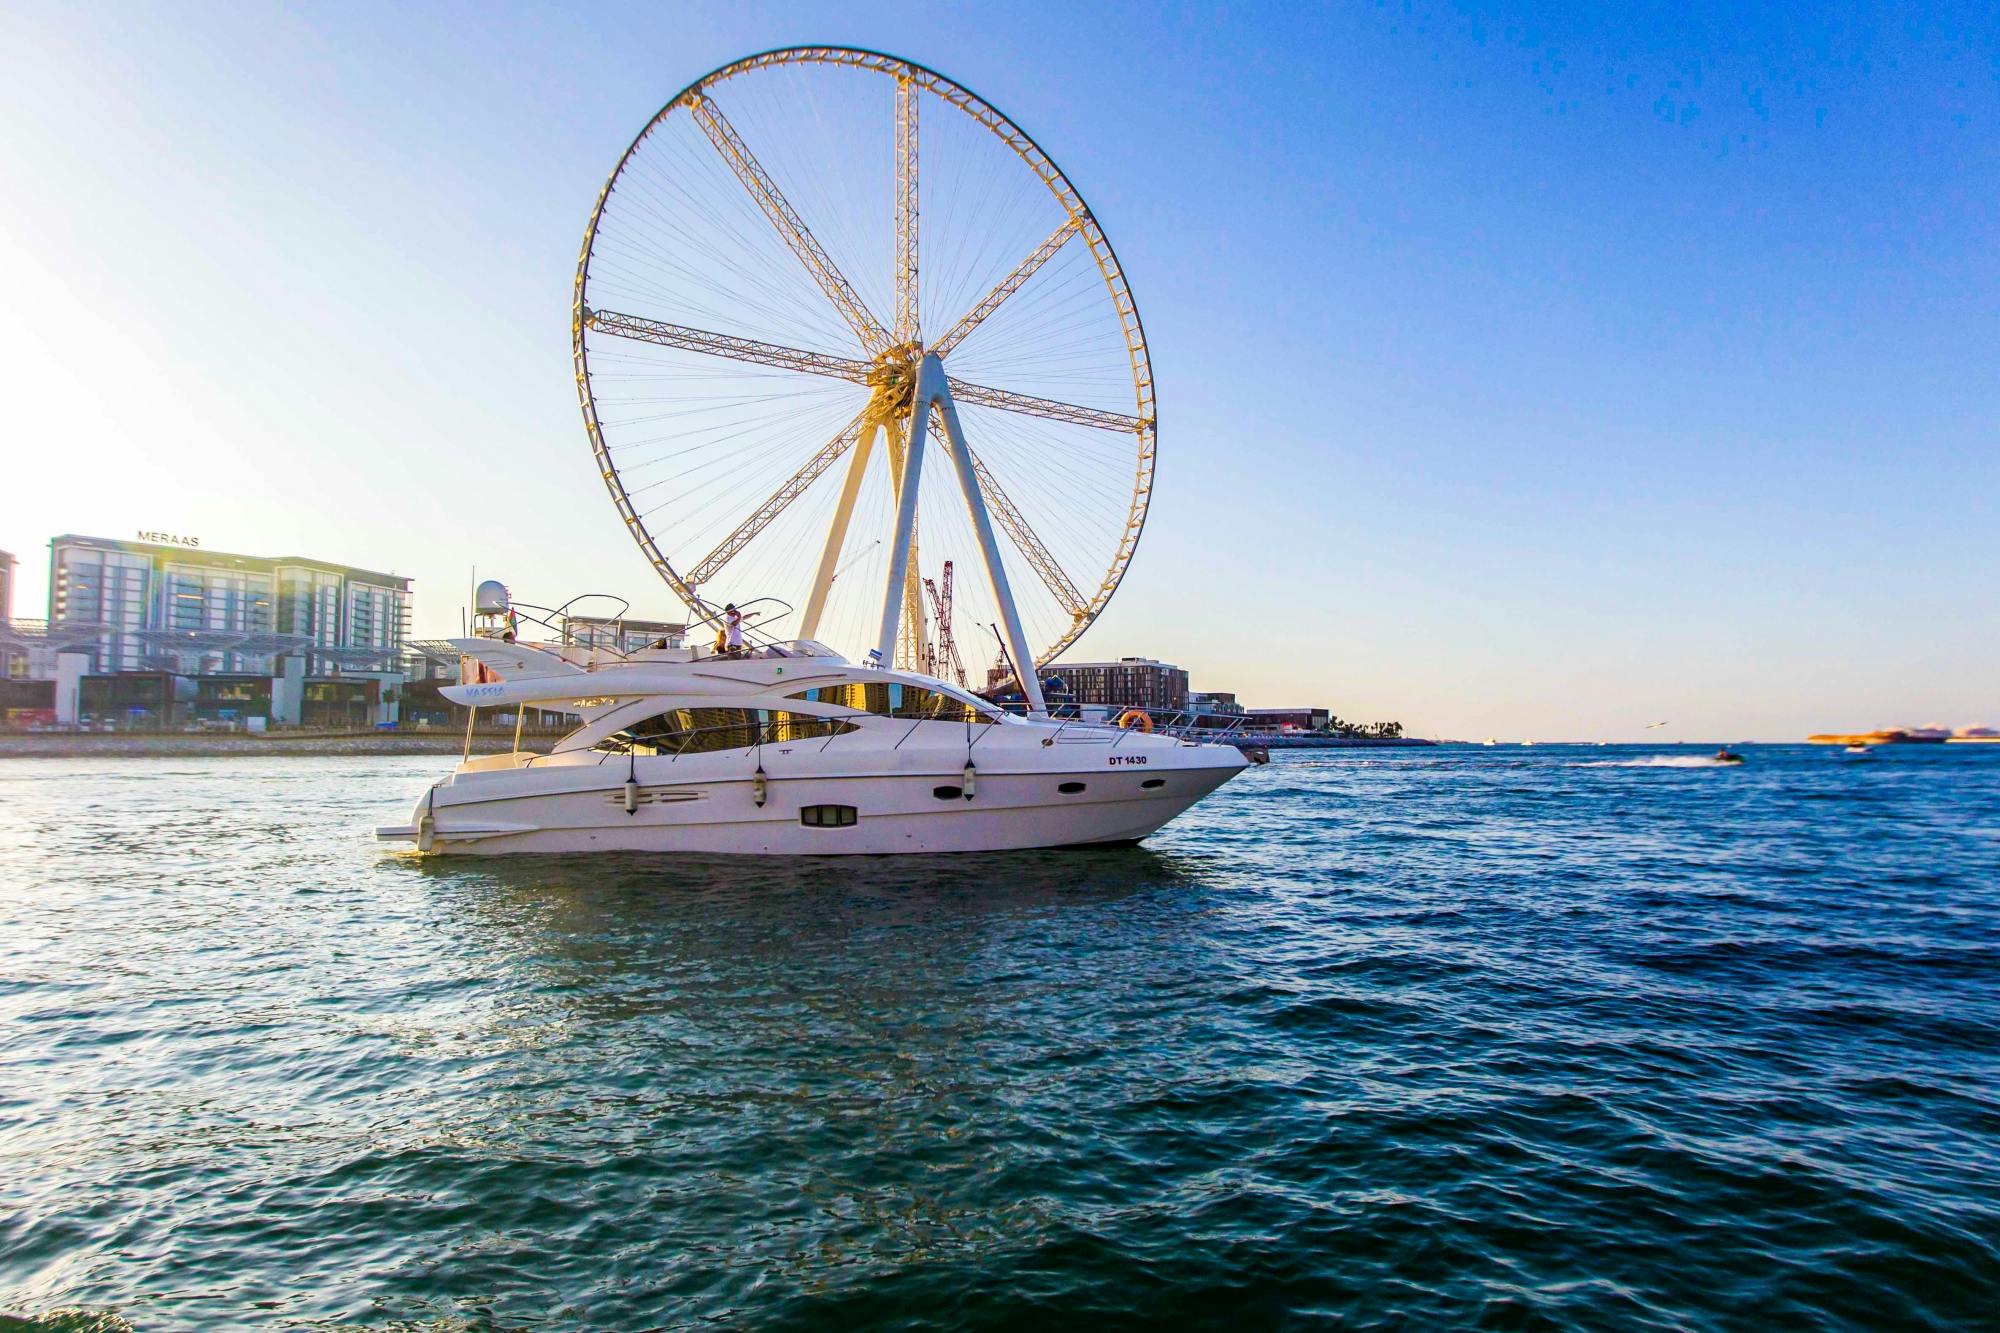 Rejs luksusowym jachtem po Dubaju – 150-metrowy jacht Vassia